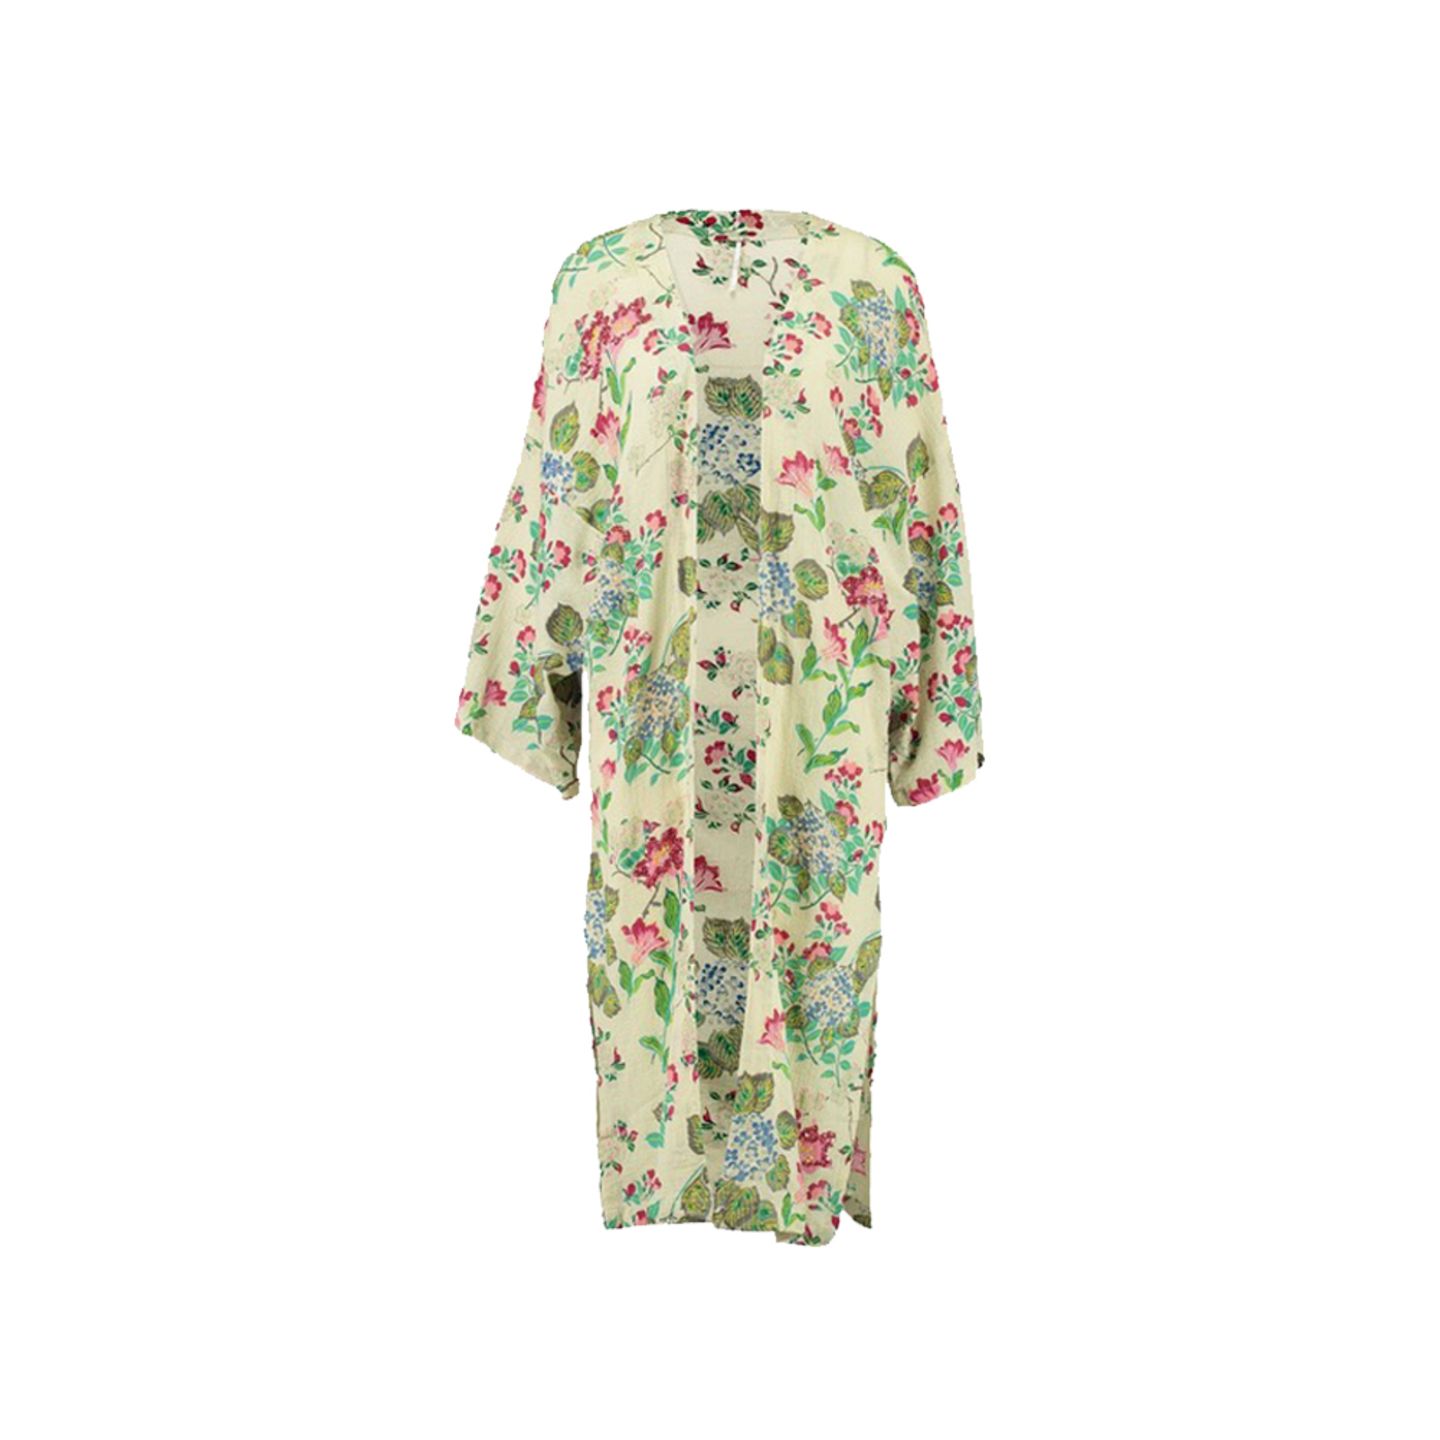 Leichter Kimono für kühle Sommerabende. Von Free People, erhältlich über Zalando, um 130 Euro.